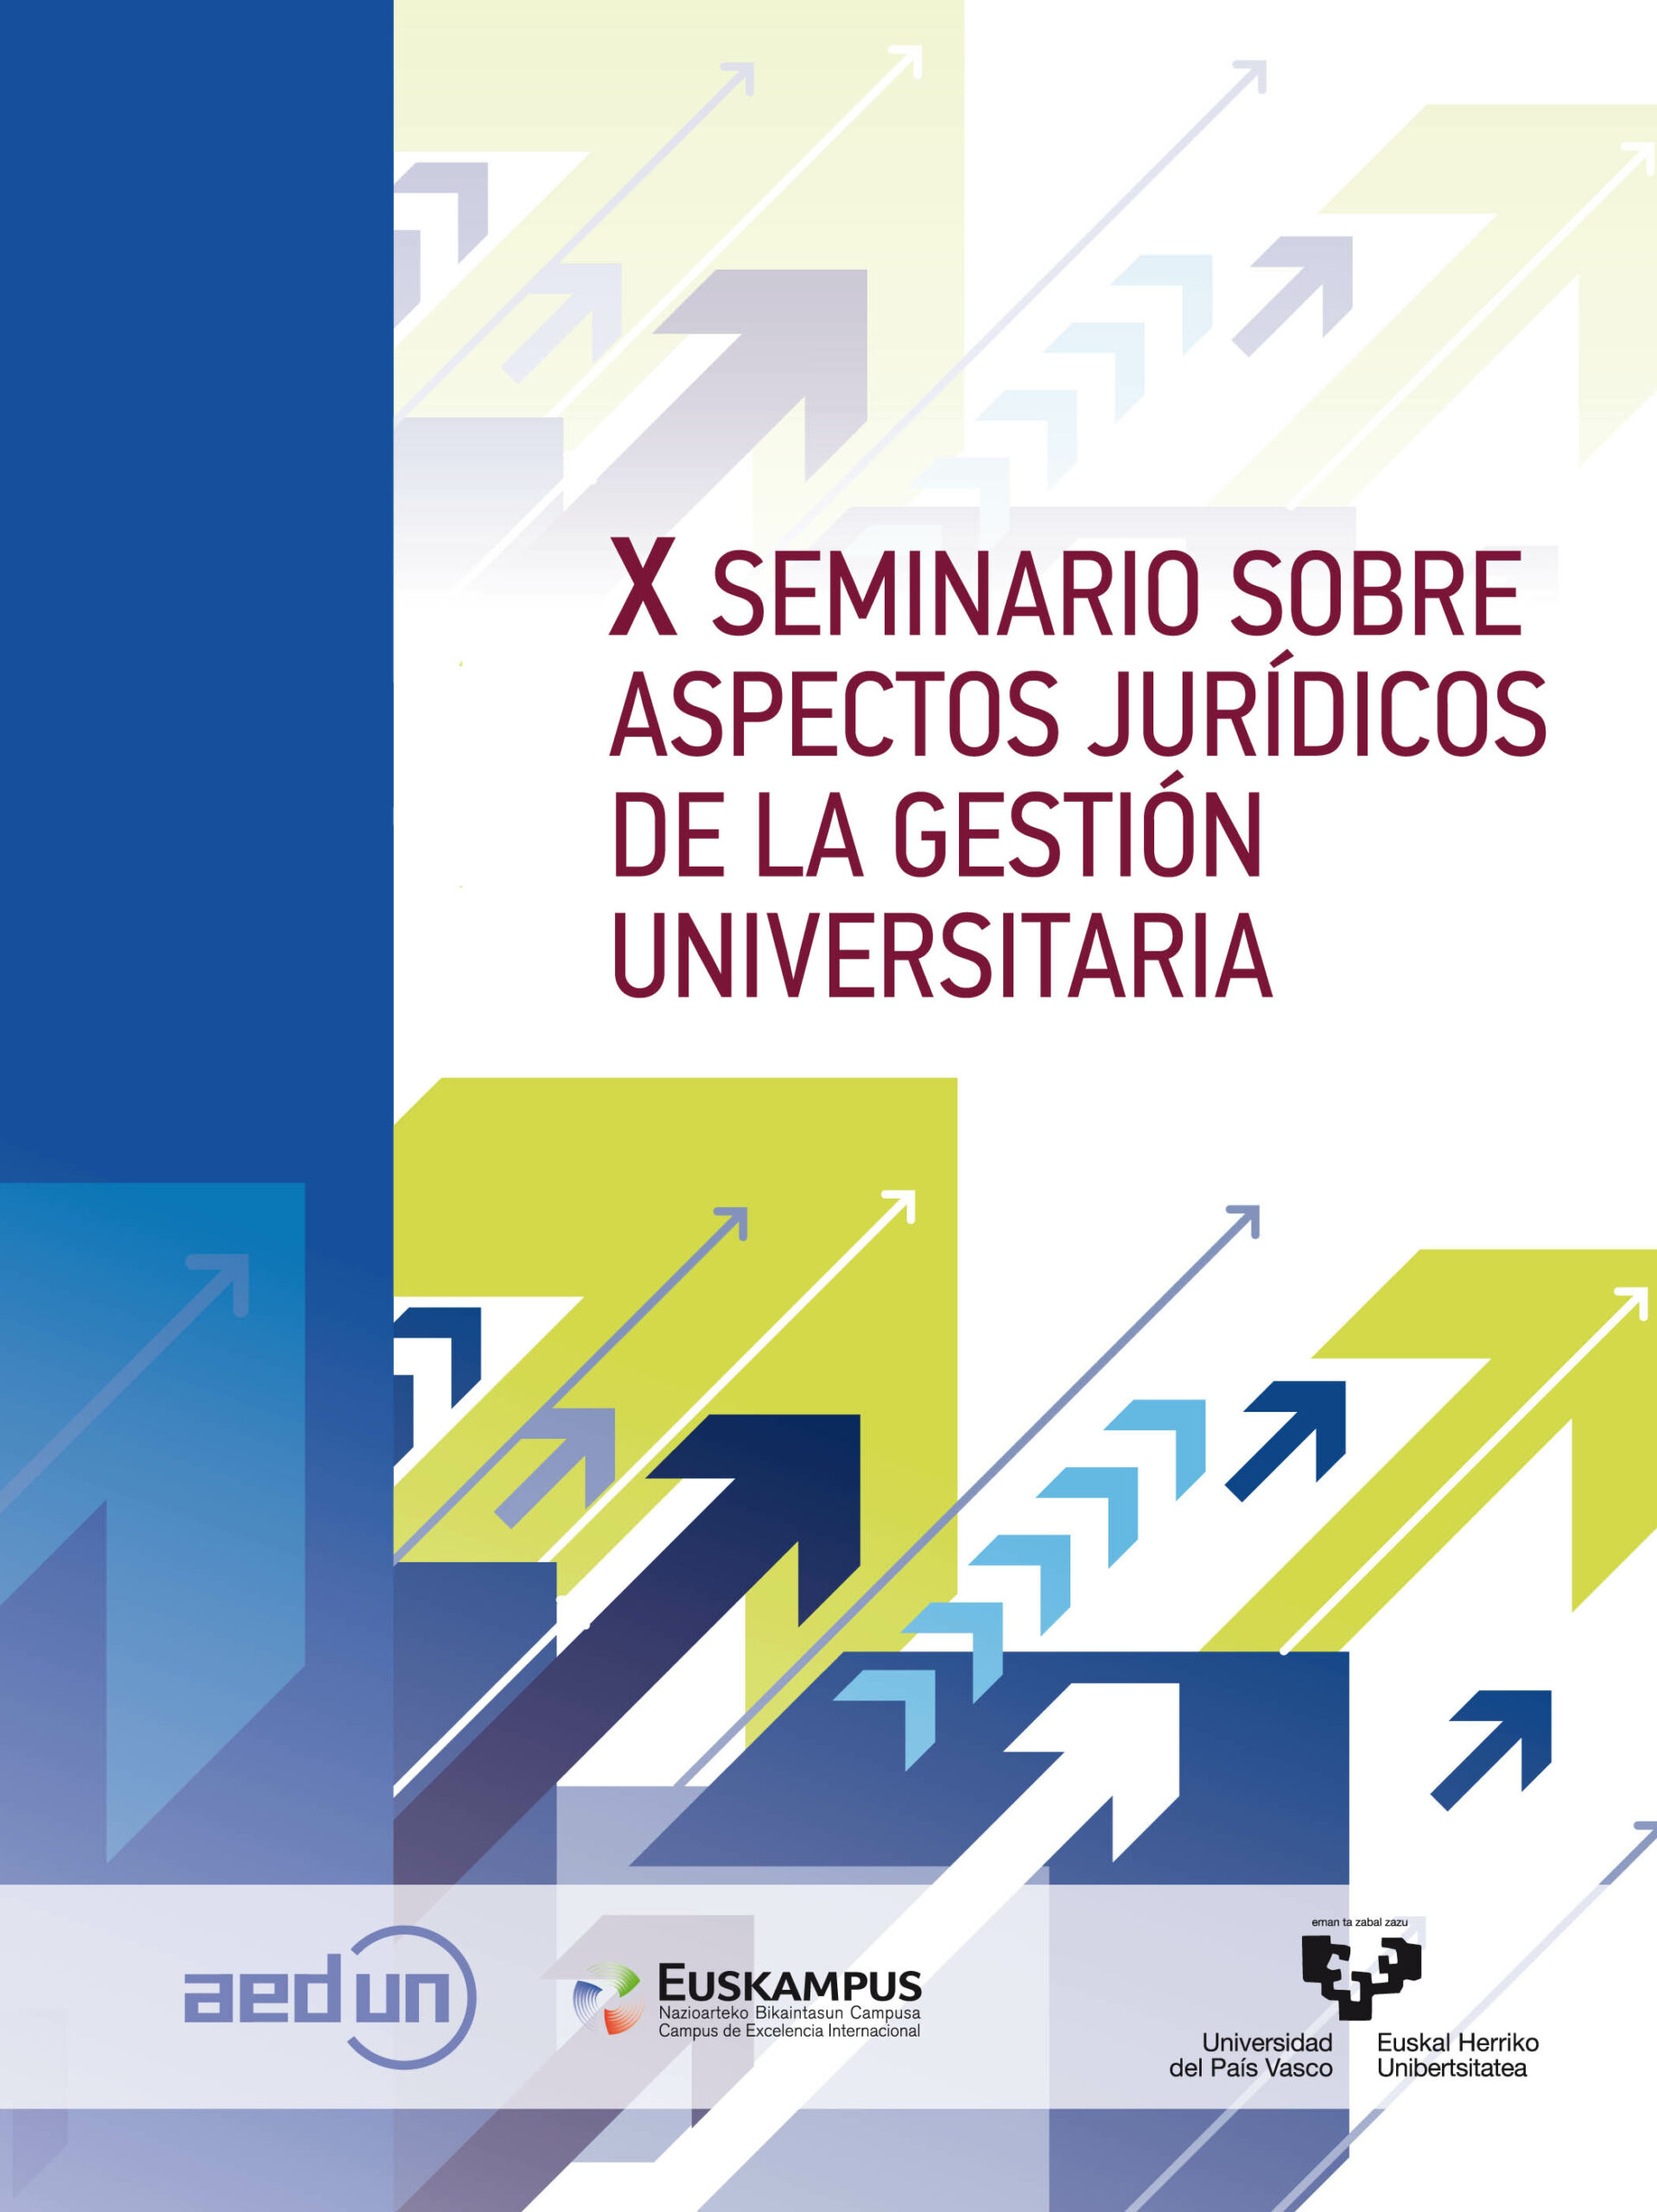 X Seminario sobre aspectos jurídicos de la gestión universitaria